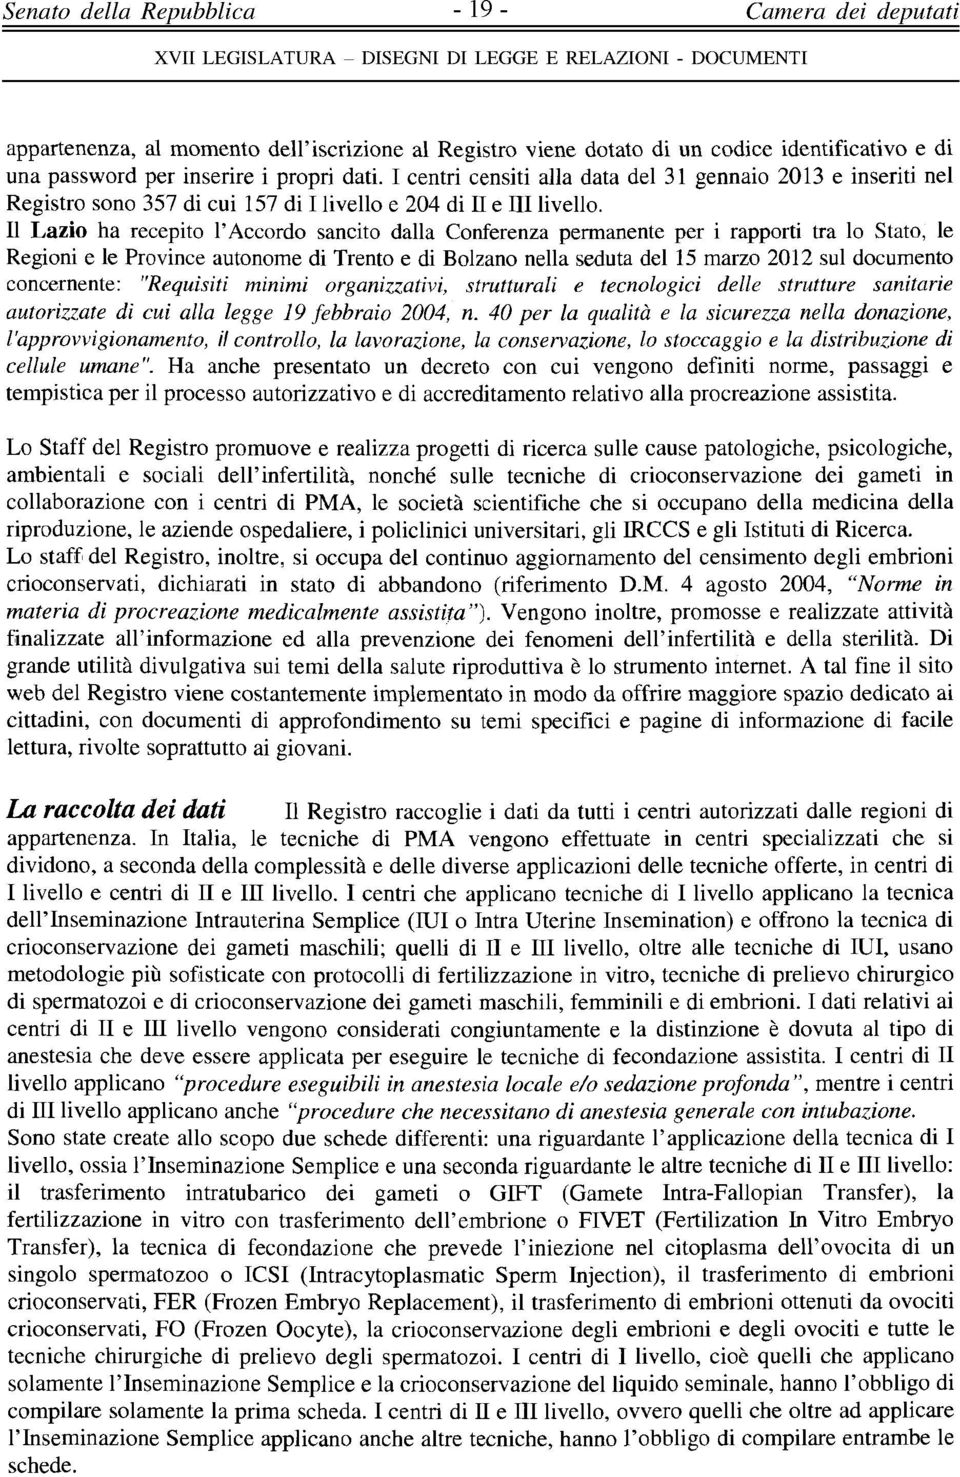 Il Lazio ha recepito l'accordo sancito dalla Conferenza permanente per i rapporti tra lo Stato, le Regioni e le Province autonome di Trento e di Bolzano nella seduta del 15 marzo 2012 sul documento